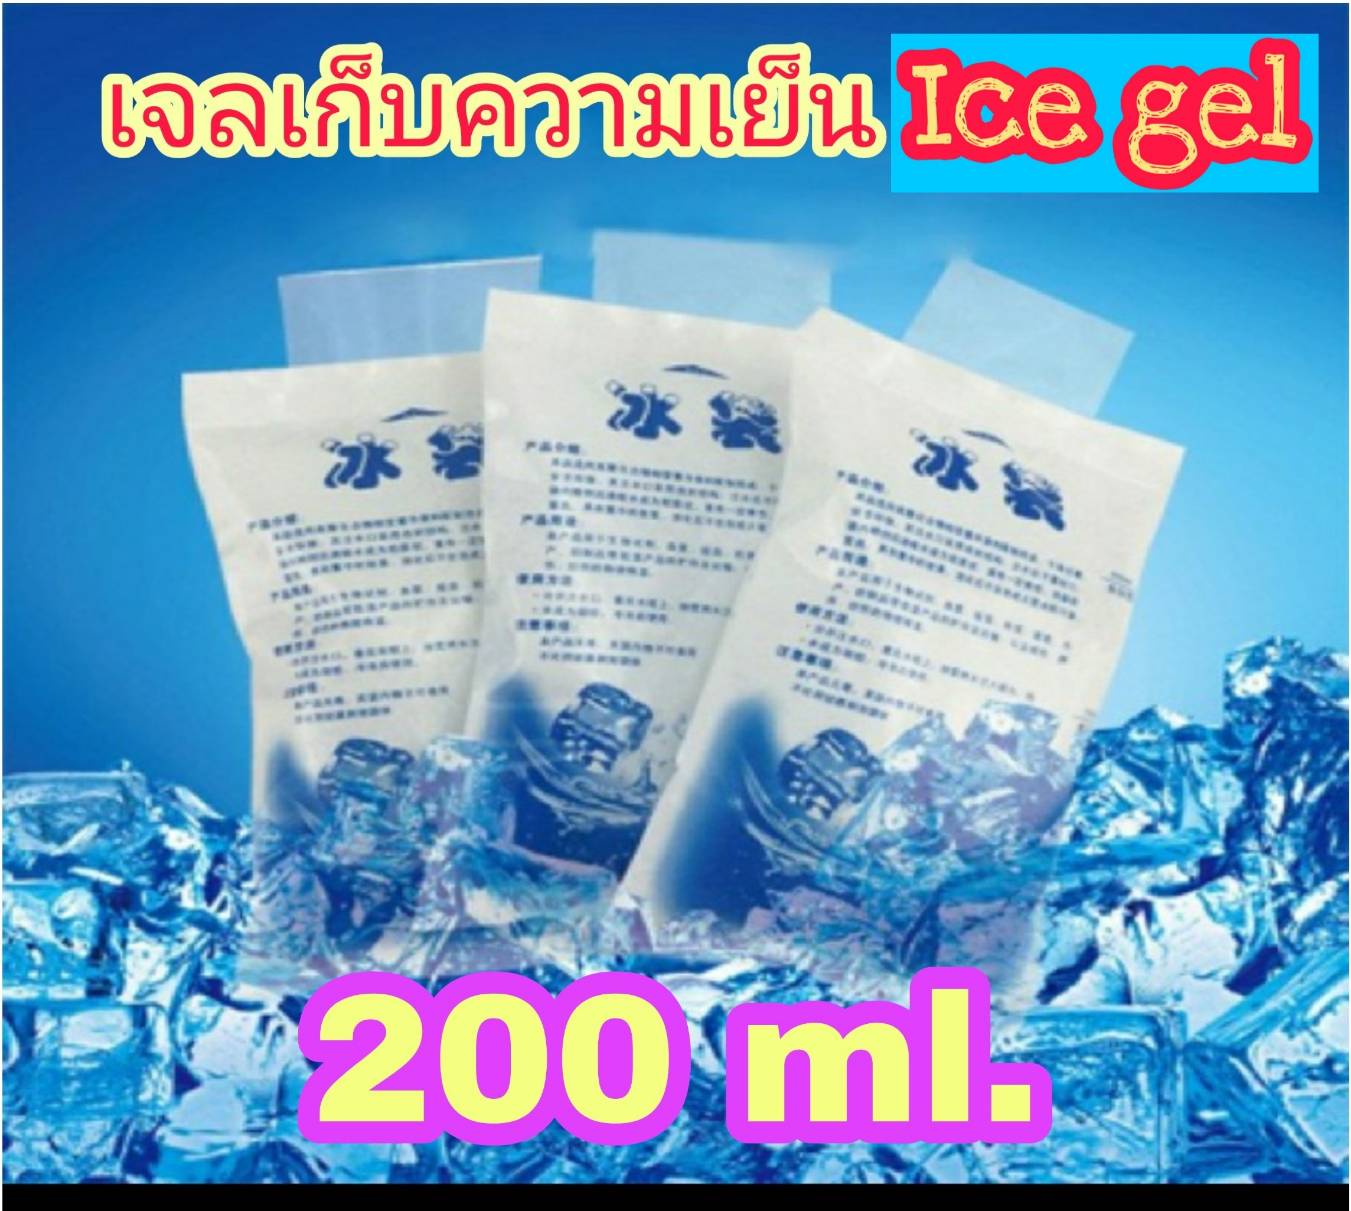 200 ml. 10 ชิ้น เจลเก็บความเย็น Ice gel ไอซ์เจล ไอซ์แพค เจลเย็น น้ำแข็งเทียม น้ำแข็ง กระเป๋าเก็บความเย็น แช่น้ำนม คุ้มค่ามาก ใช้ซ้ำได้ ส่งเร็ว